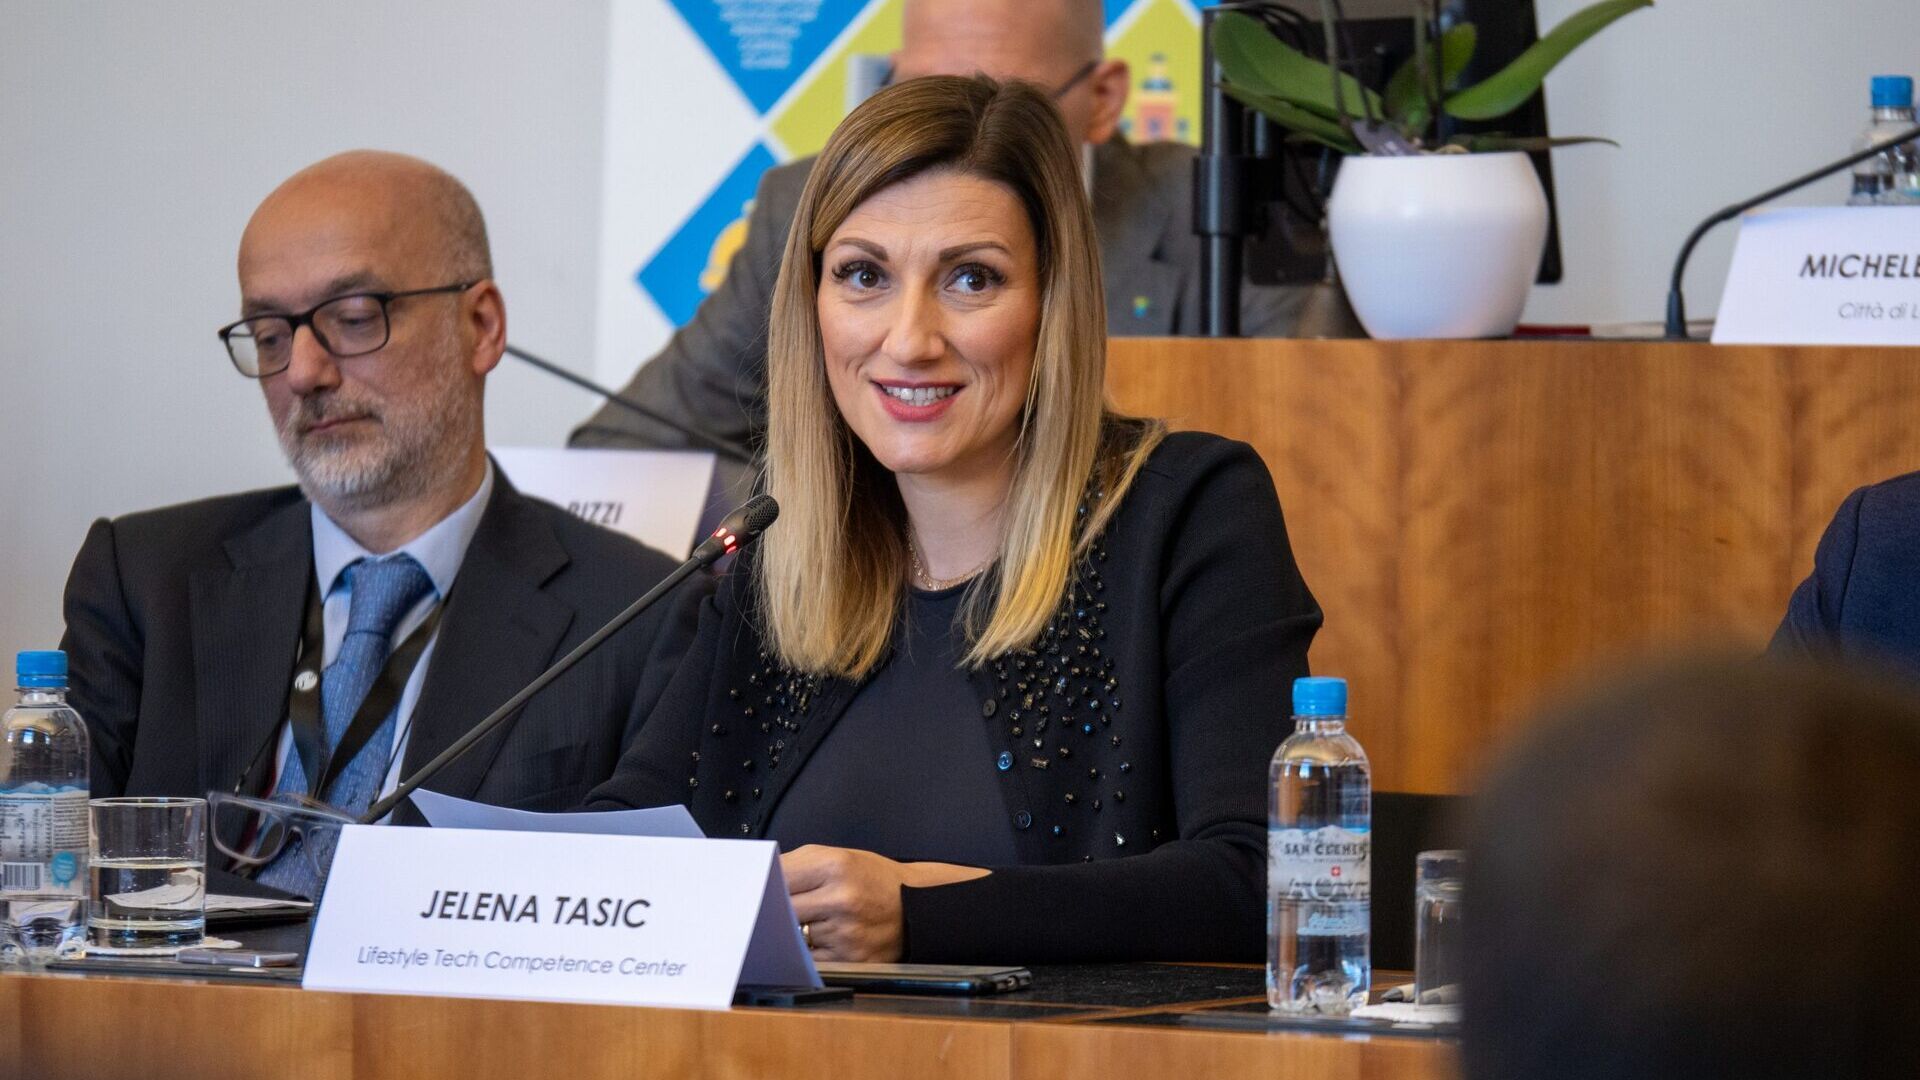 LTCC: Jelena Tašić Pizzolato è Amministratore Delegato dell’Associazione Lifestyle Tech Competence Center